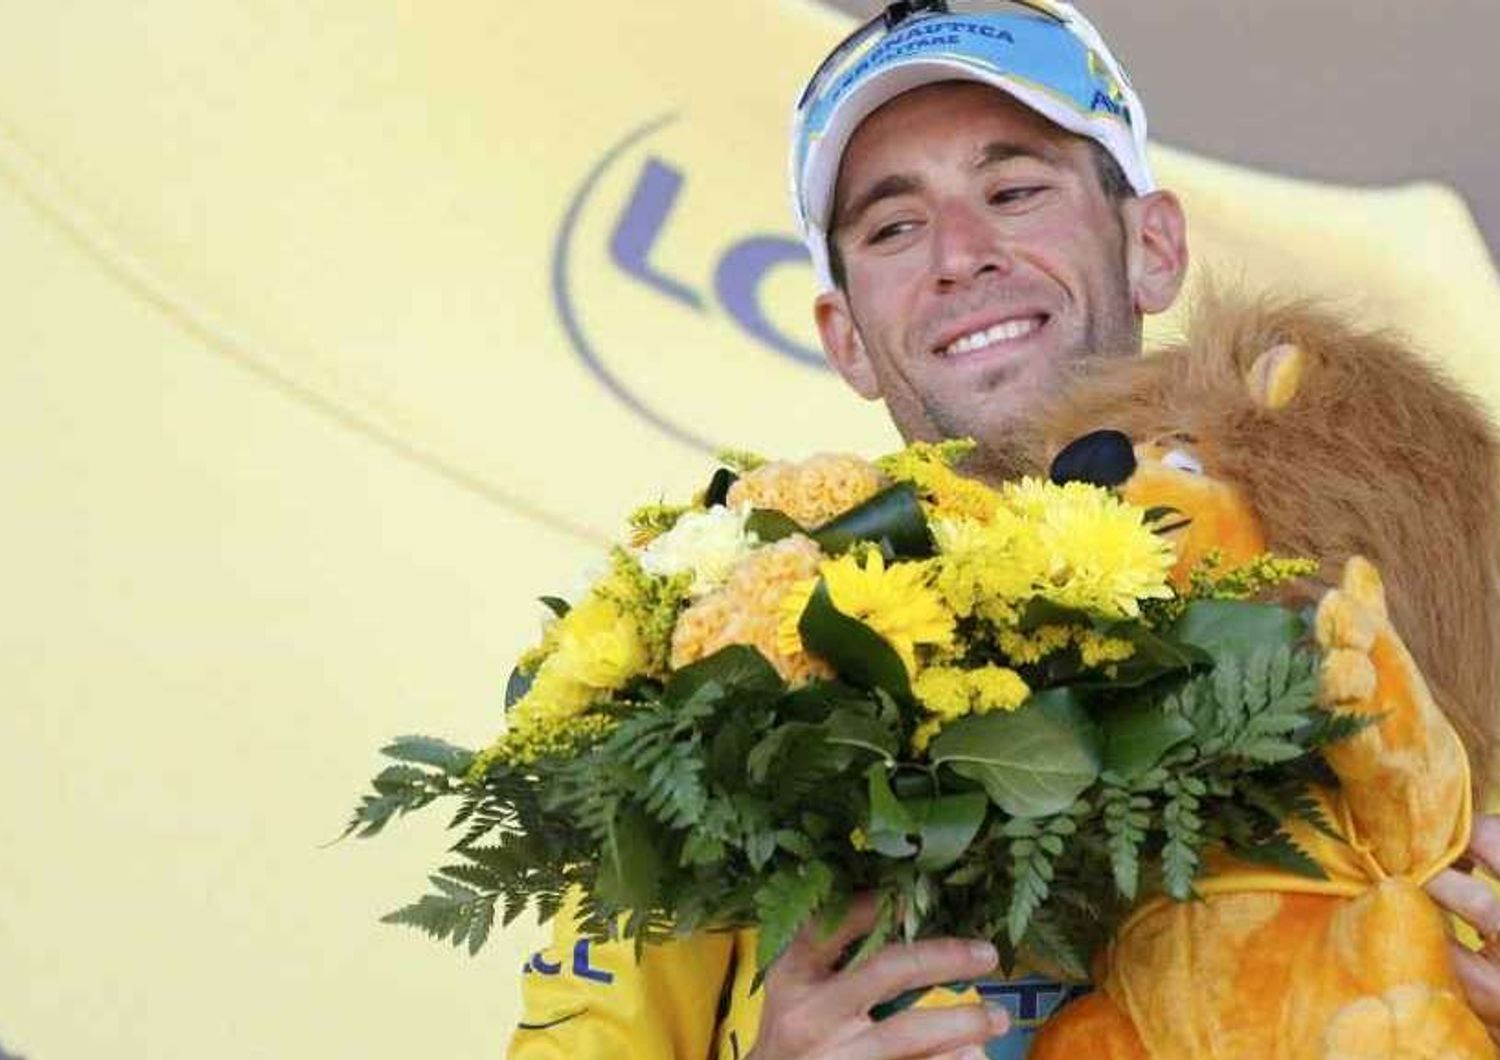 Ciclismo: Nibali 'padrone' del Tour de France, trionfa nel primo tappone alpino